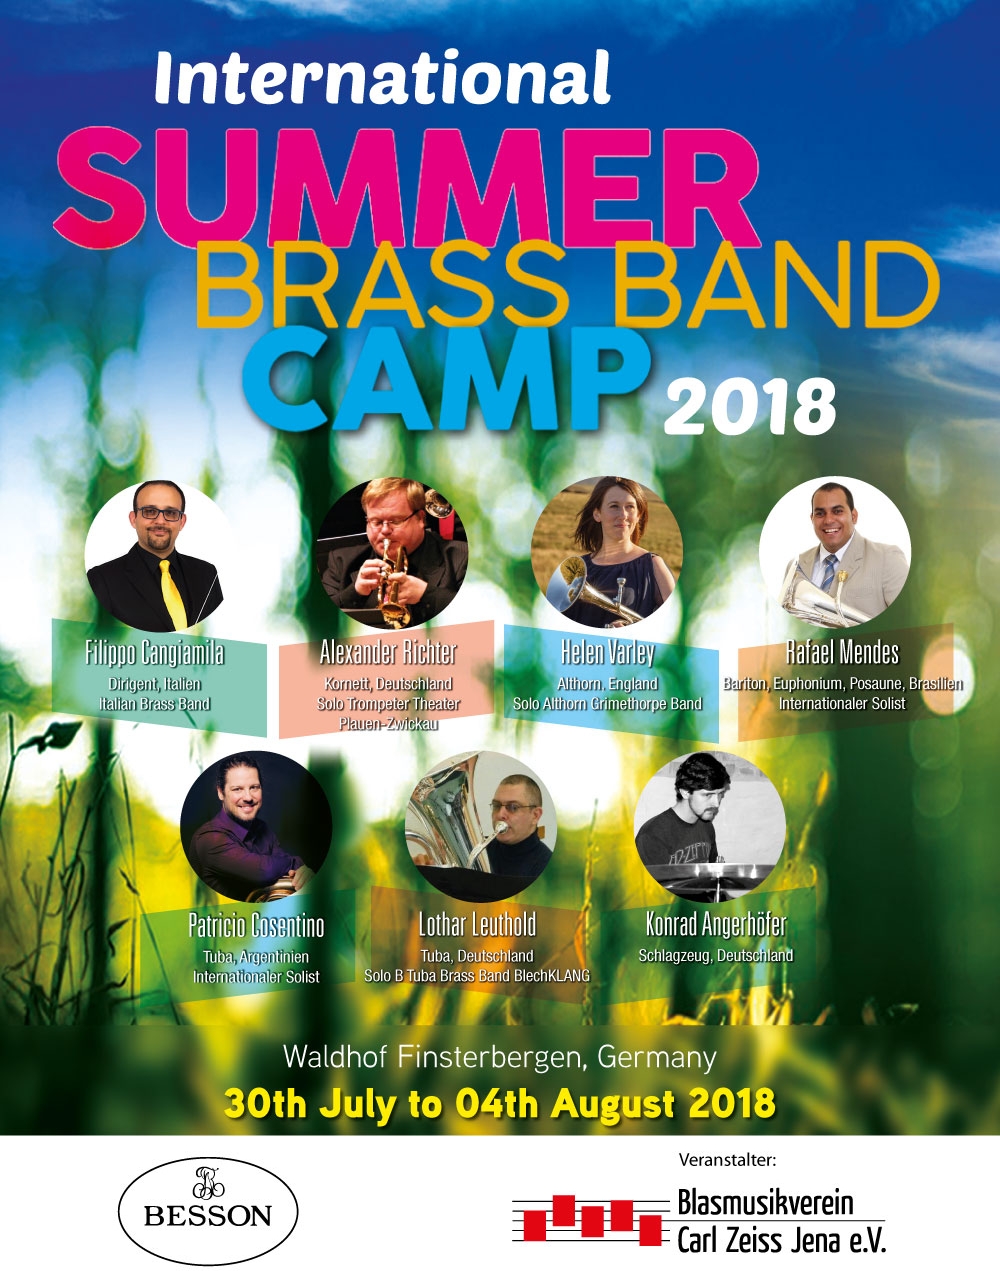 International Summer Brass Band Camp 2018